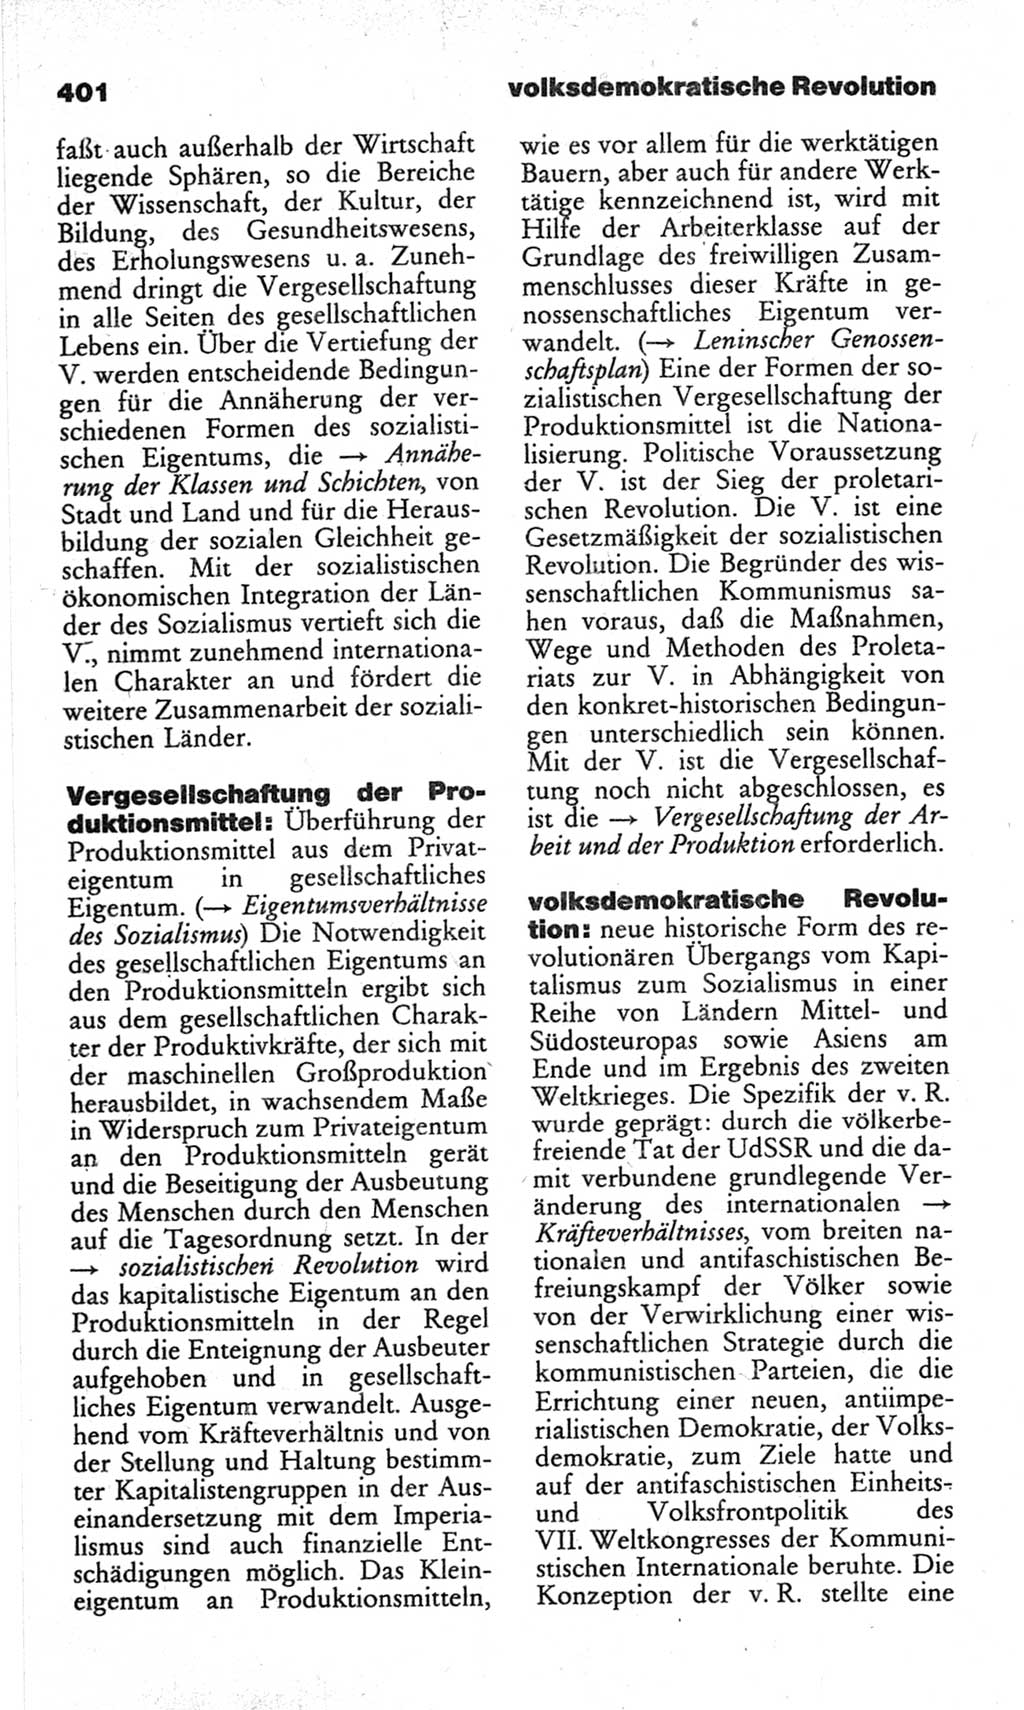 Wörterbuch des wissenschaftlichen Kommunismus [Deutsche Demokratische Republik (DDR)] 1982, Seite 401 (Wb. wiss. Komm. DDR 1982, S. 401)